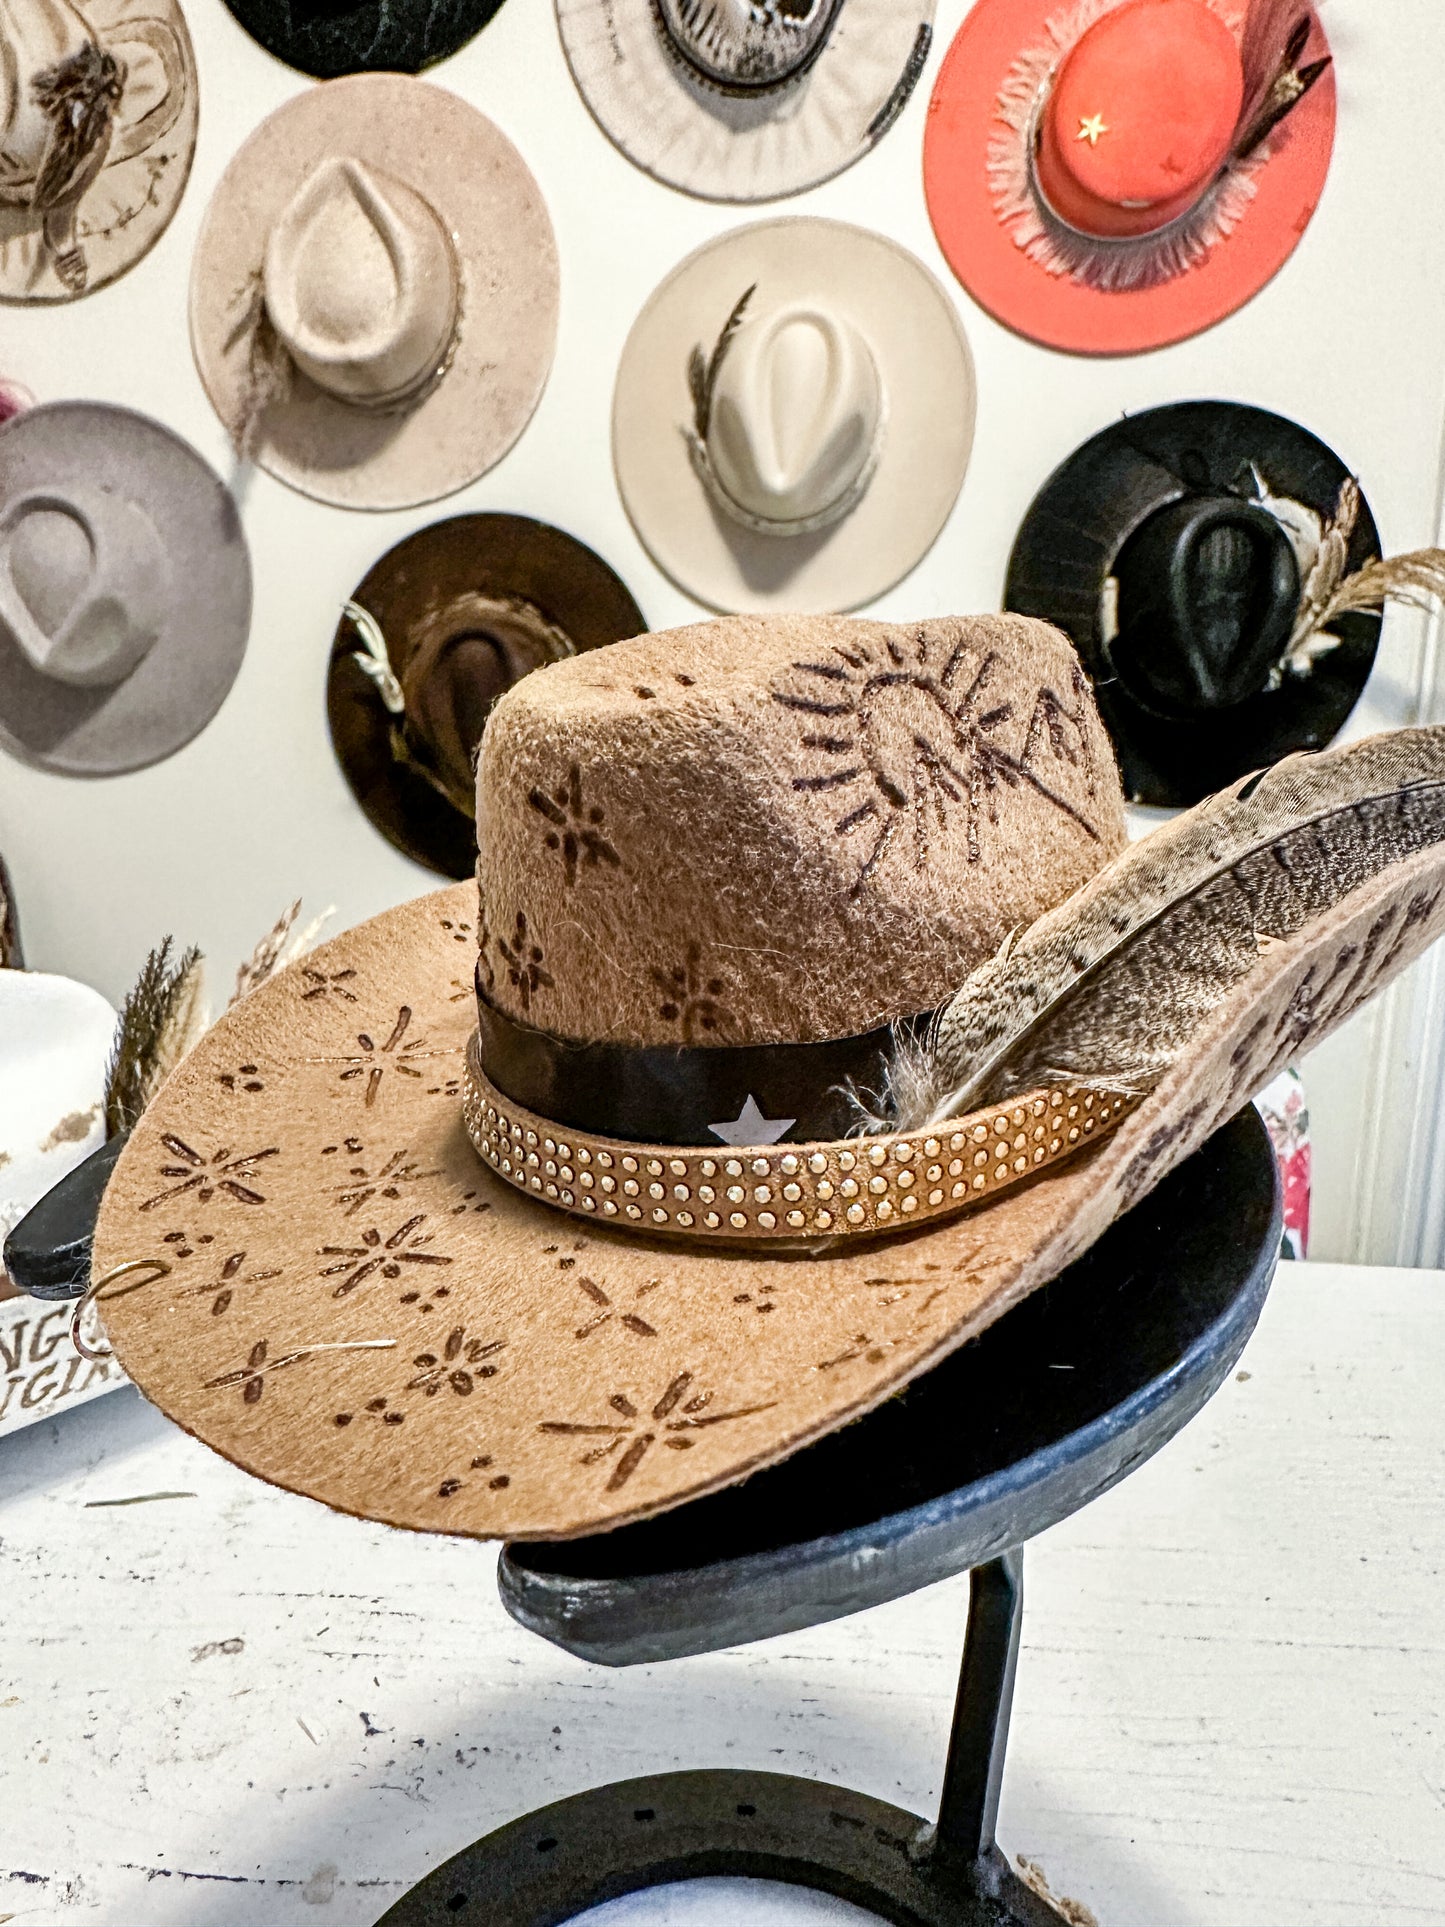 Pet Cowboy Hats